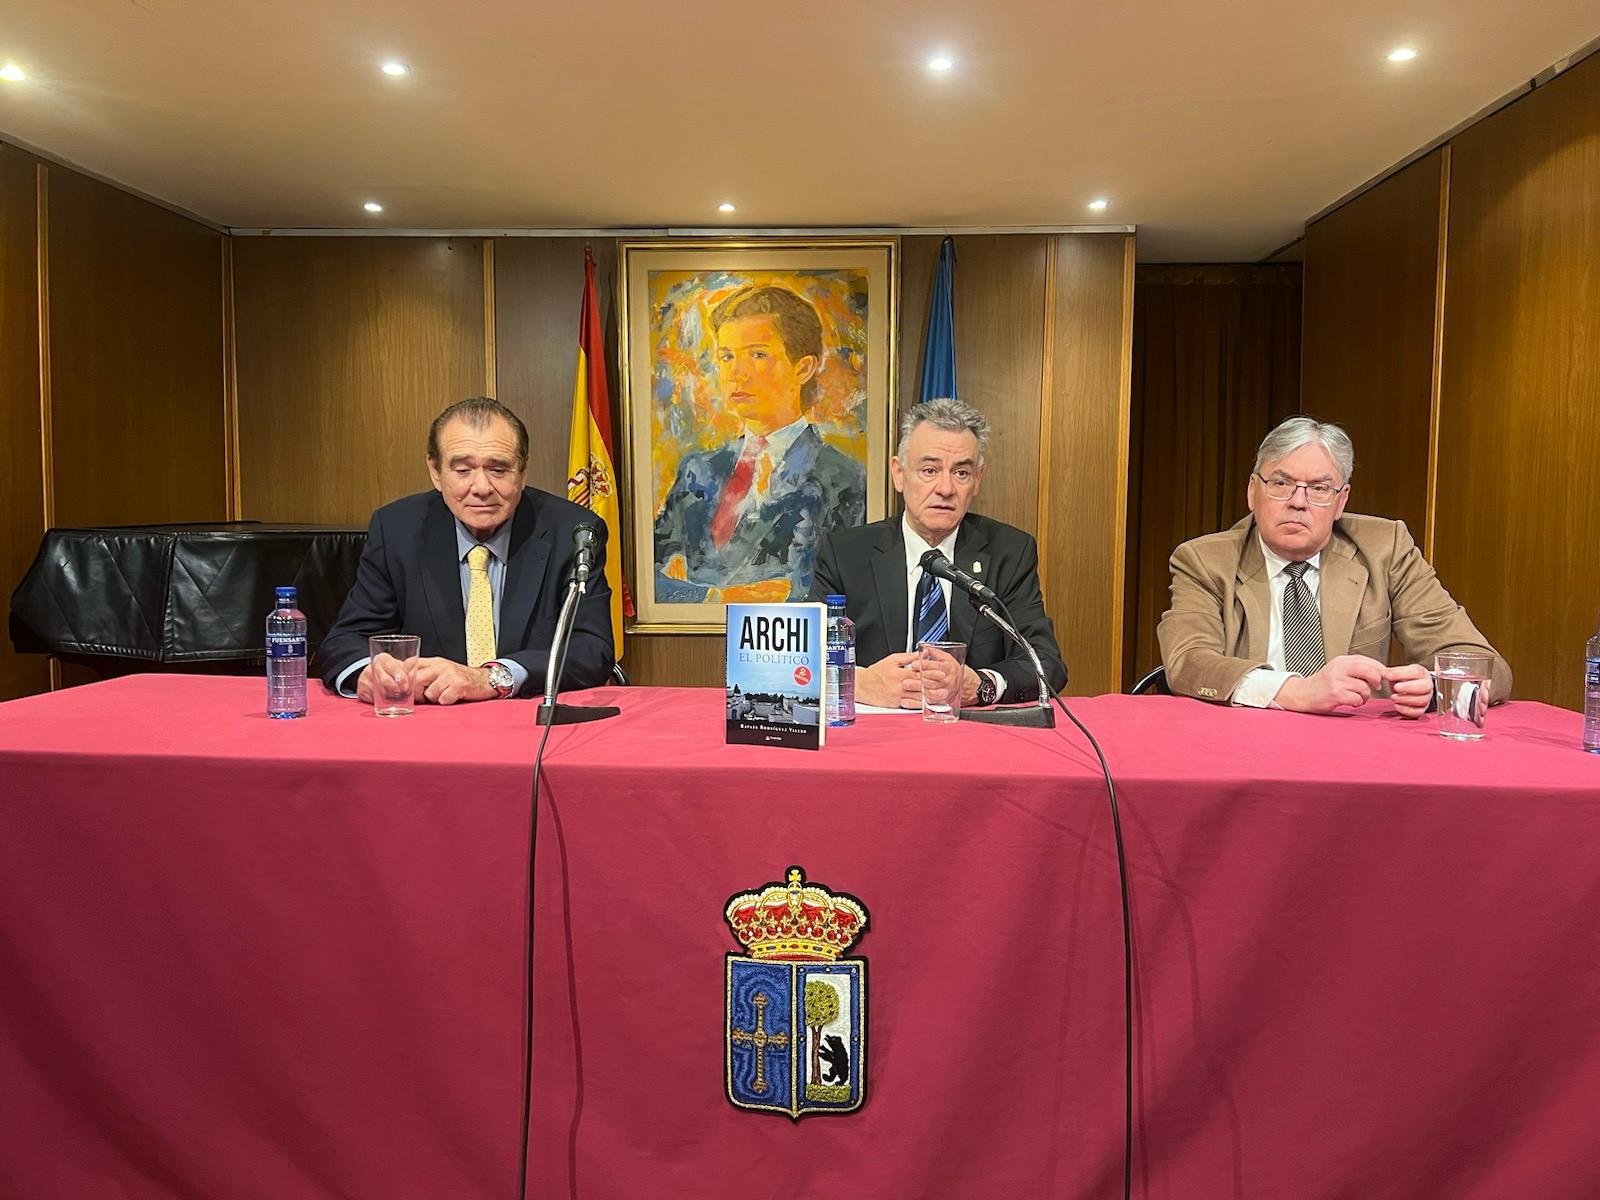 Presentación de la Segunda Edición del libro «Archi el político» en el Centro Asturiano de Madrid